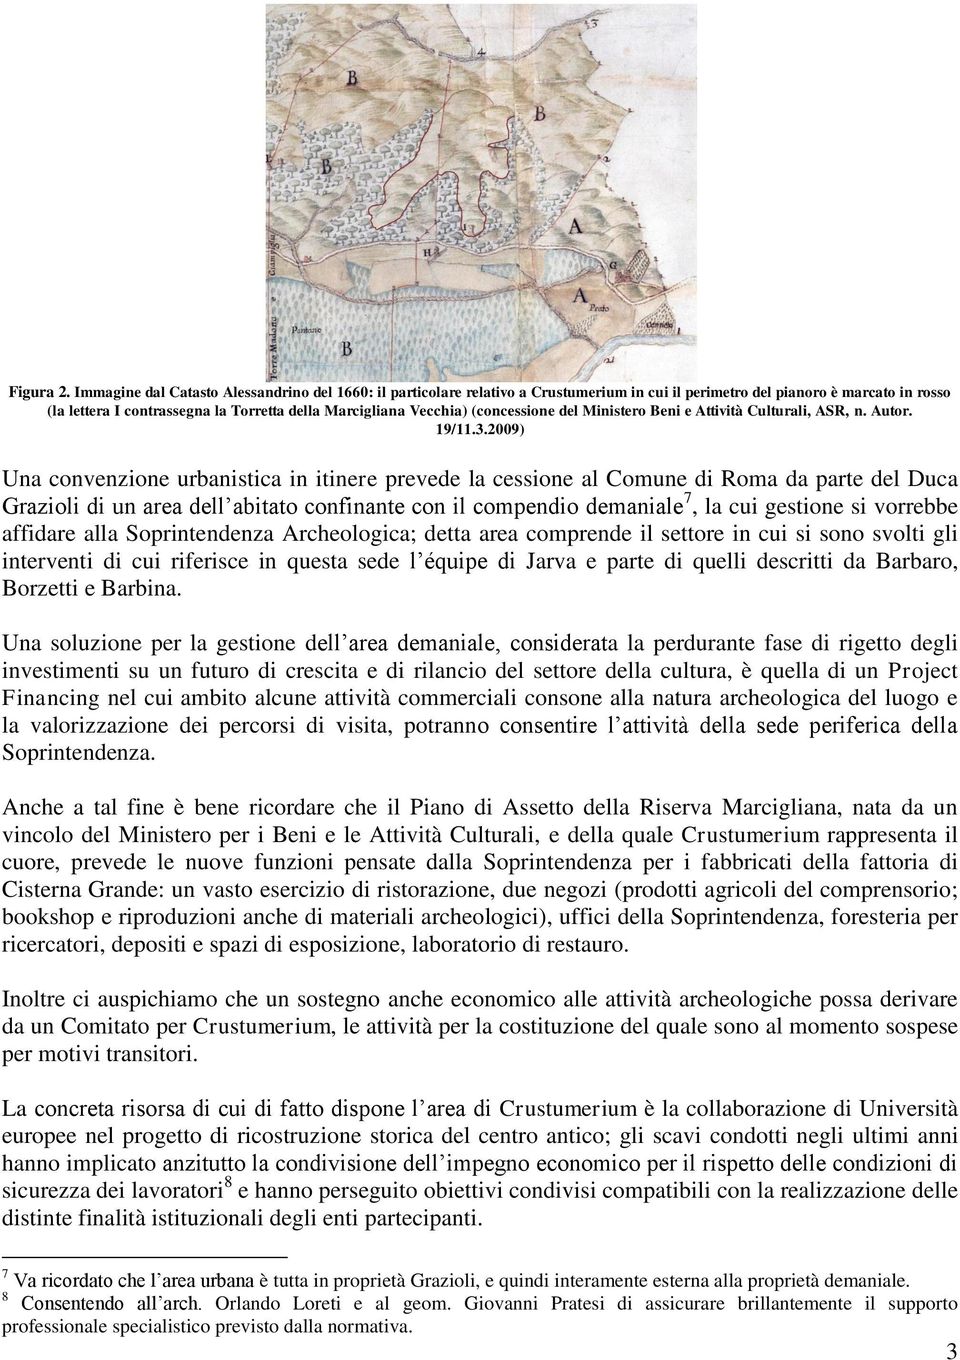 (concessione del Ministero Beni e Attività Culturali, ASR, n. Autor. 19/11.3.